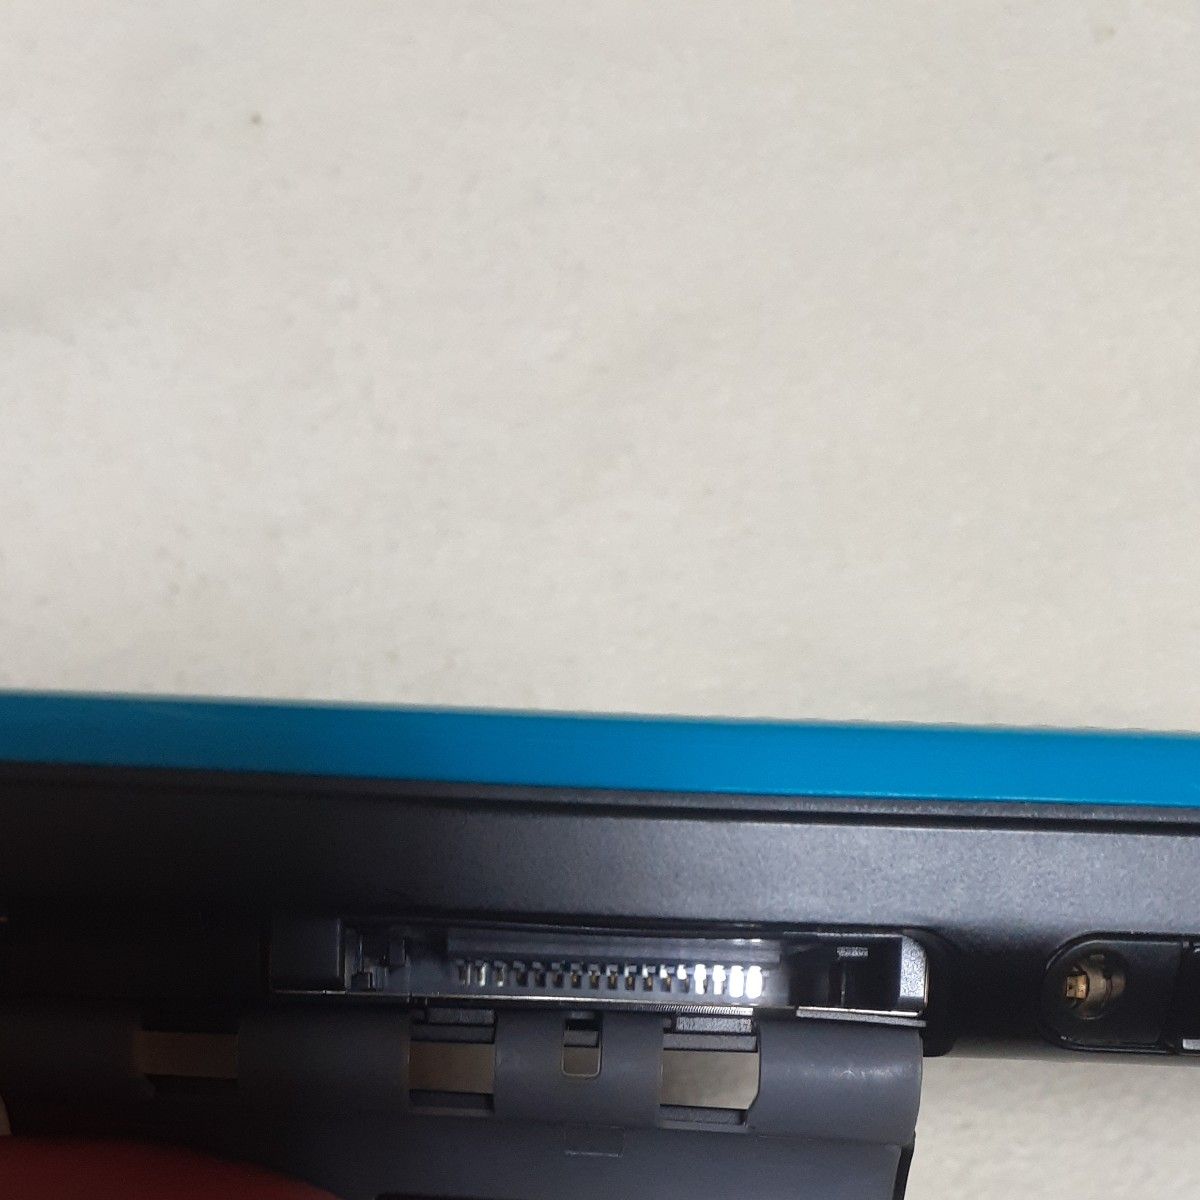 Newニンテンドー2DS ターコイズ ブラック本体と充電器セット Nintendo